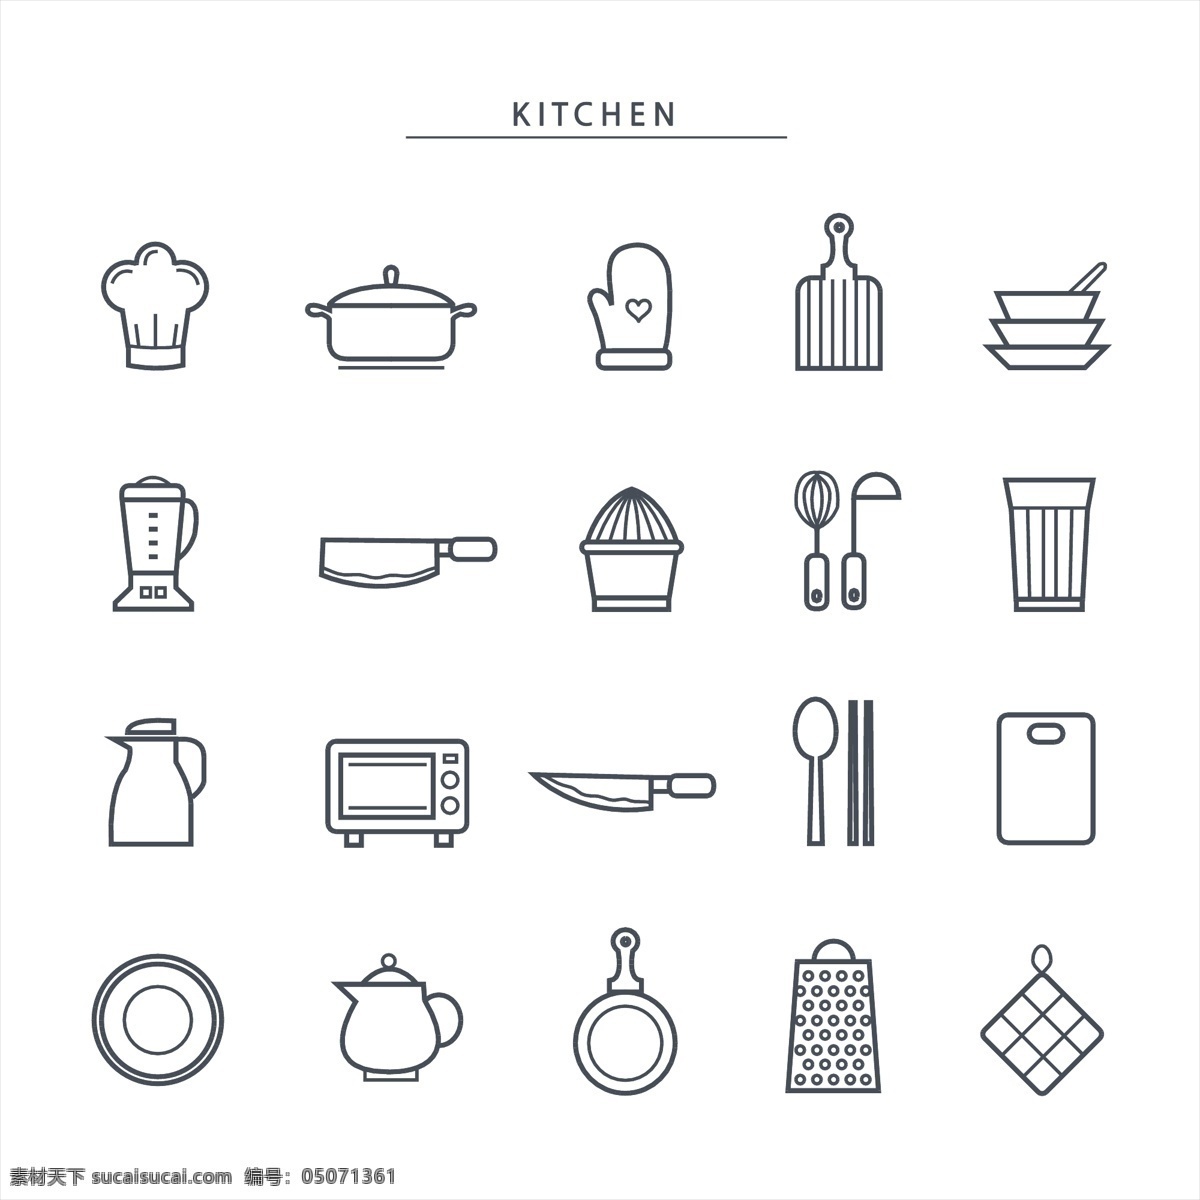 矢量 厨房 元素 图标 矢量厨房图标 厨房图标 矢量图标 卡通图标